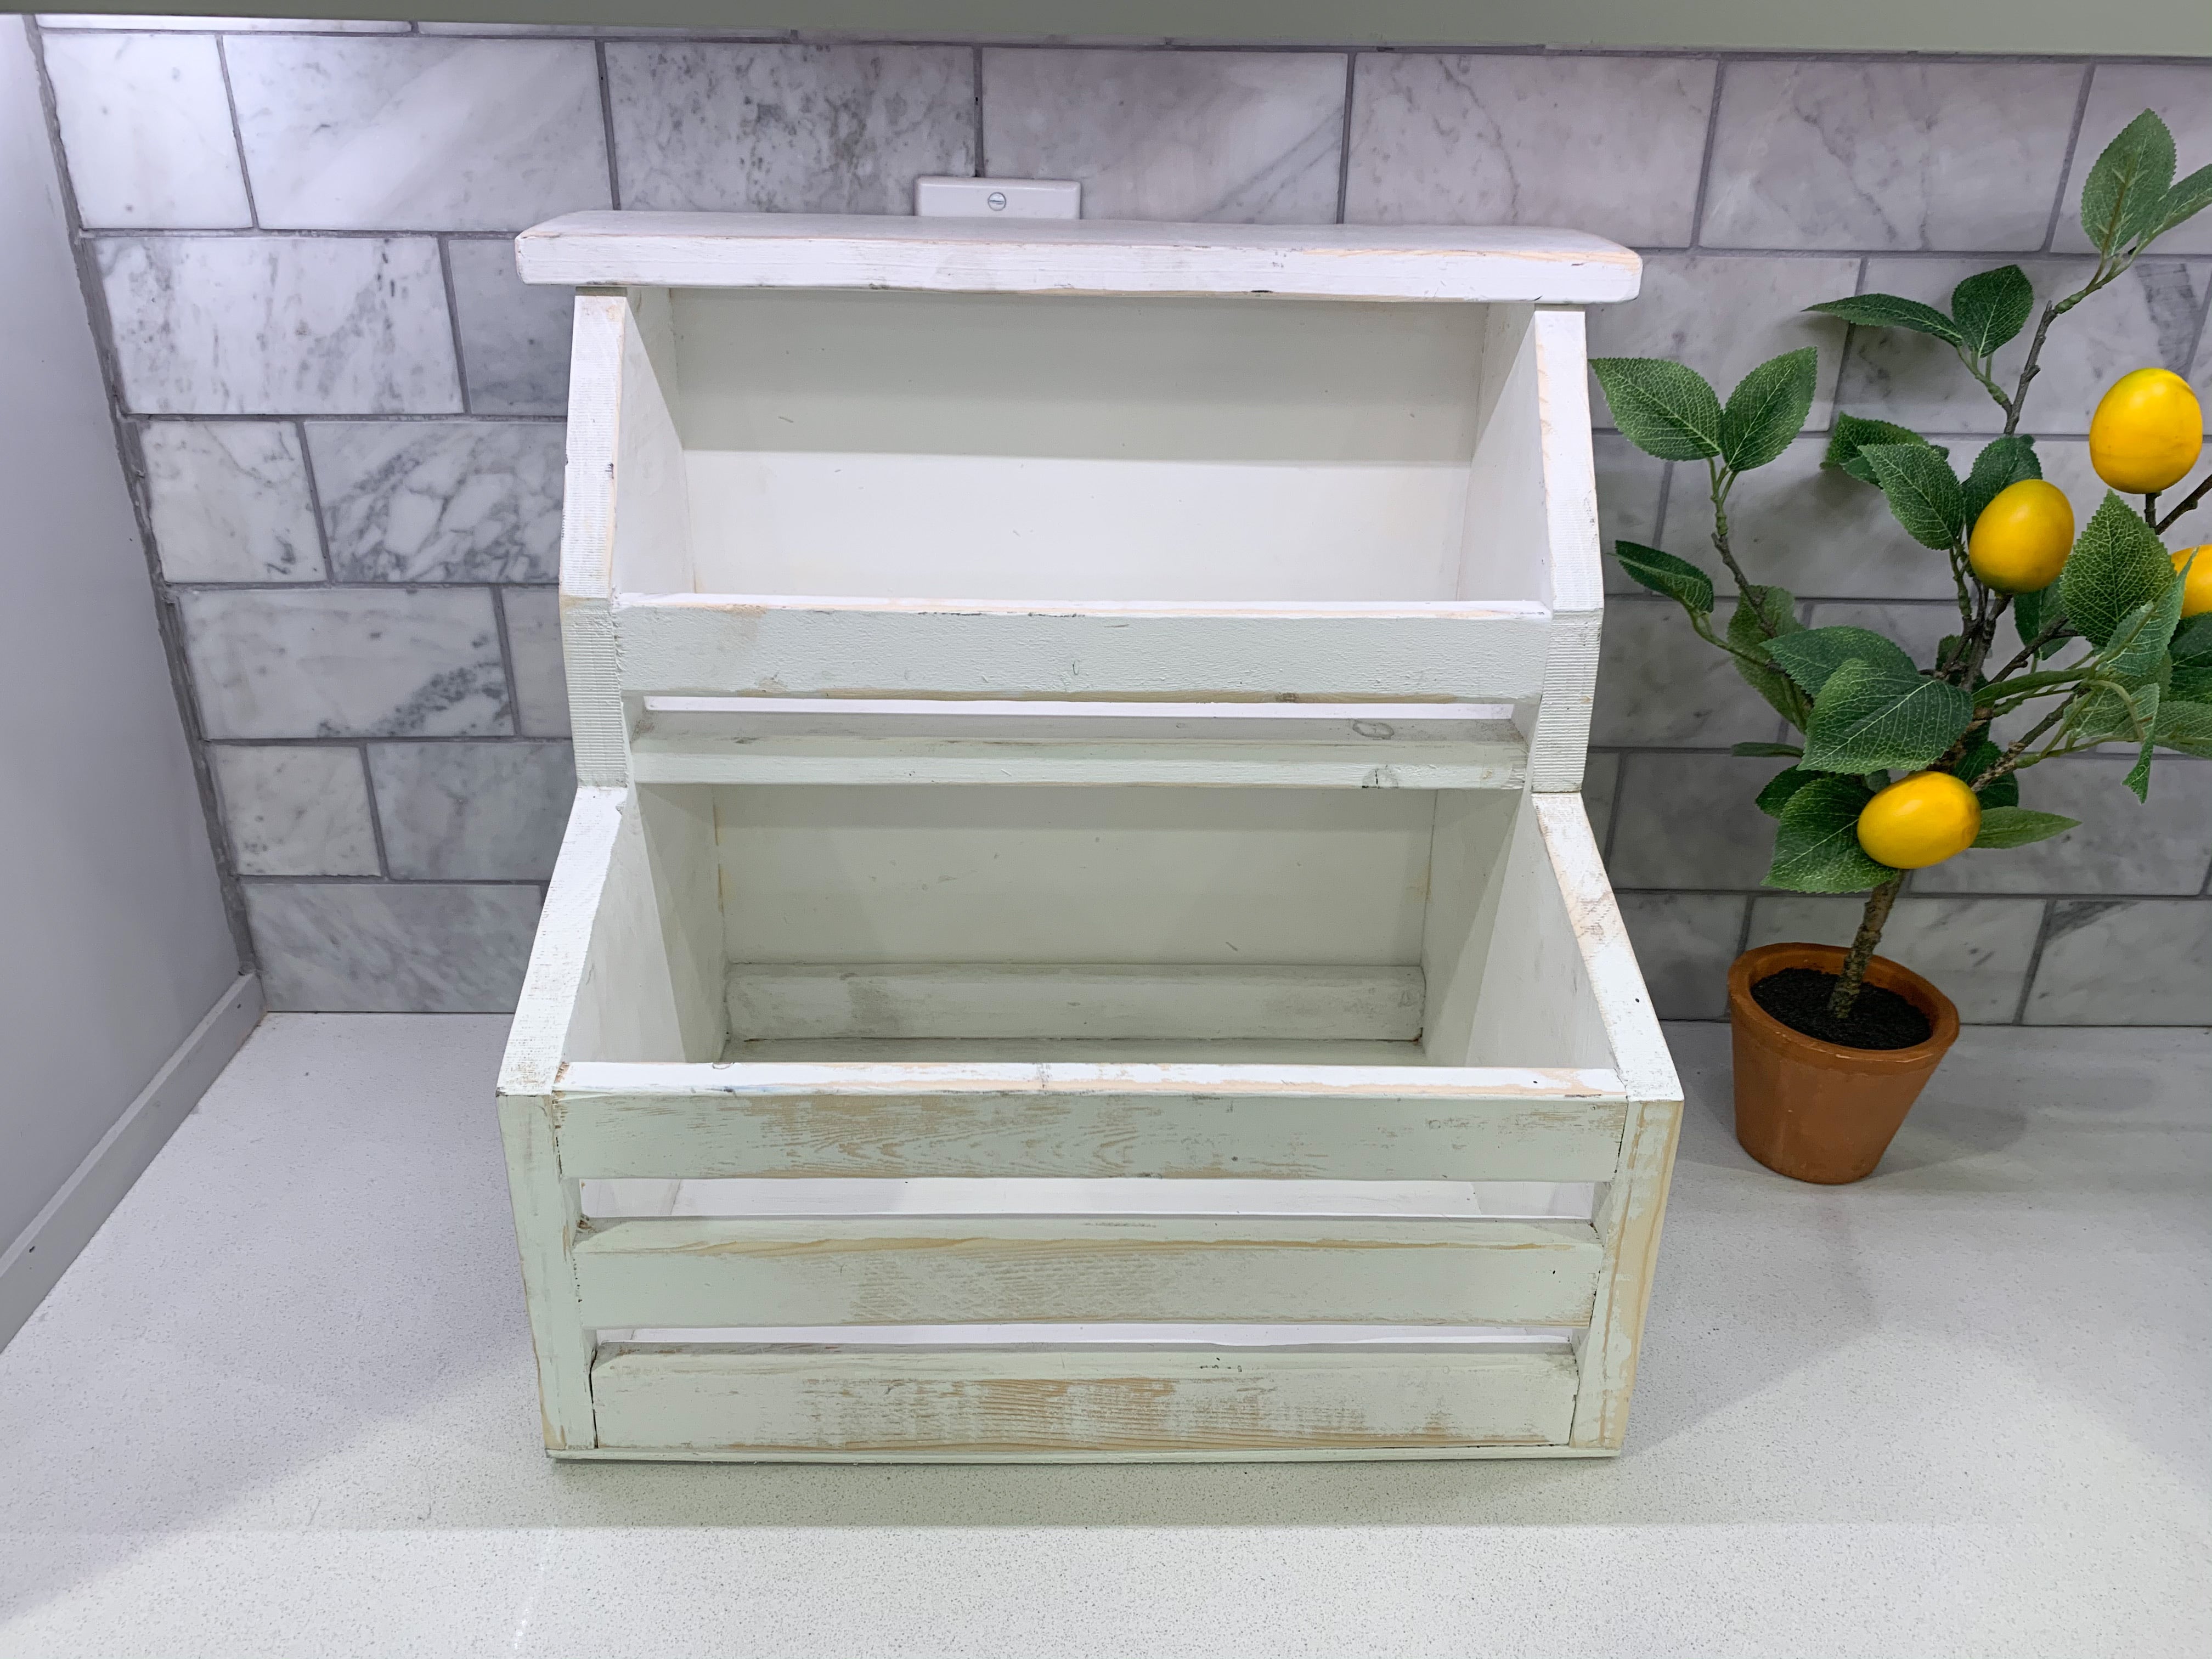 Kitchen Veggie Bin, Countertop Storage, Home Decor, Vintage Style Bin 